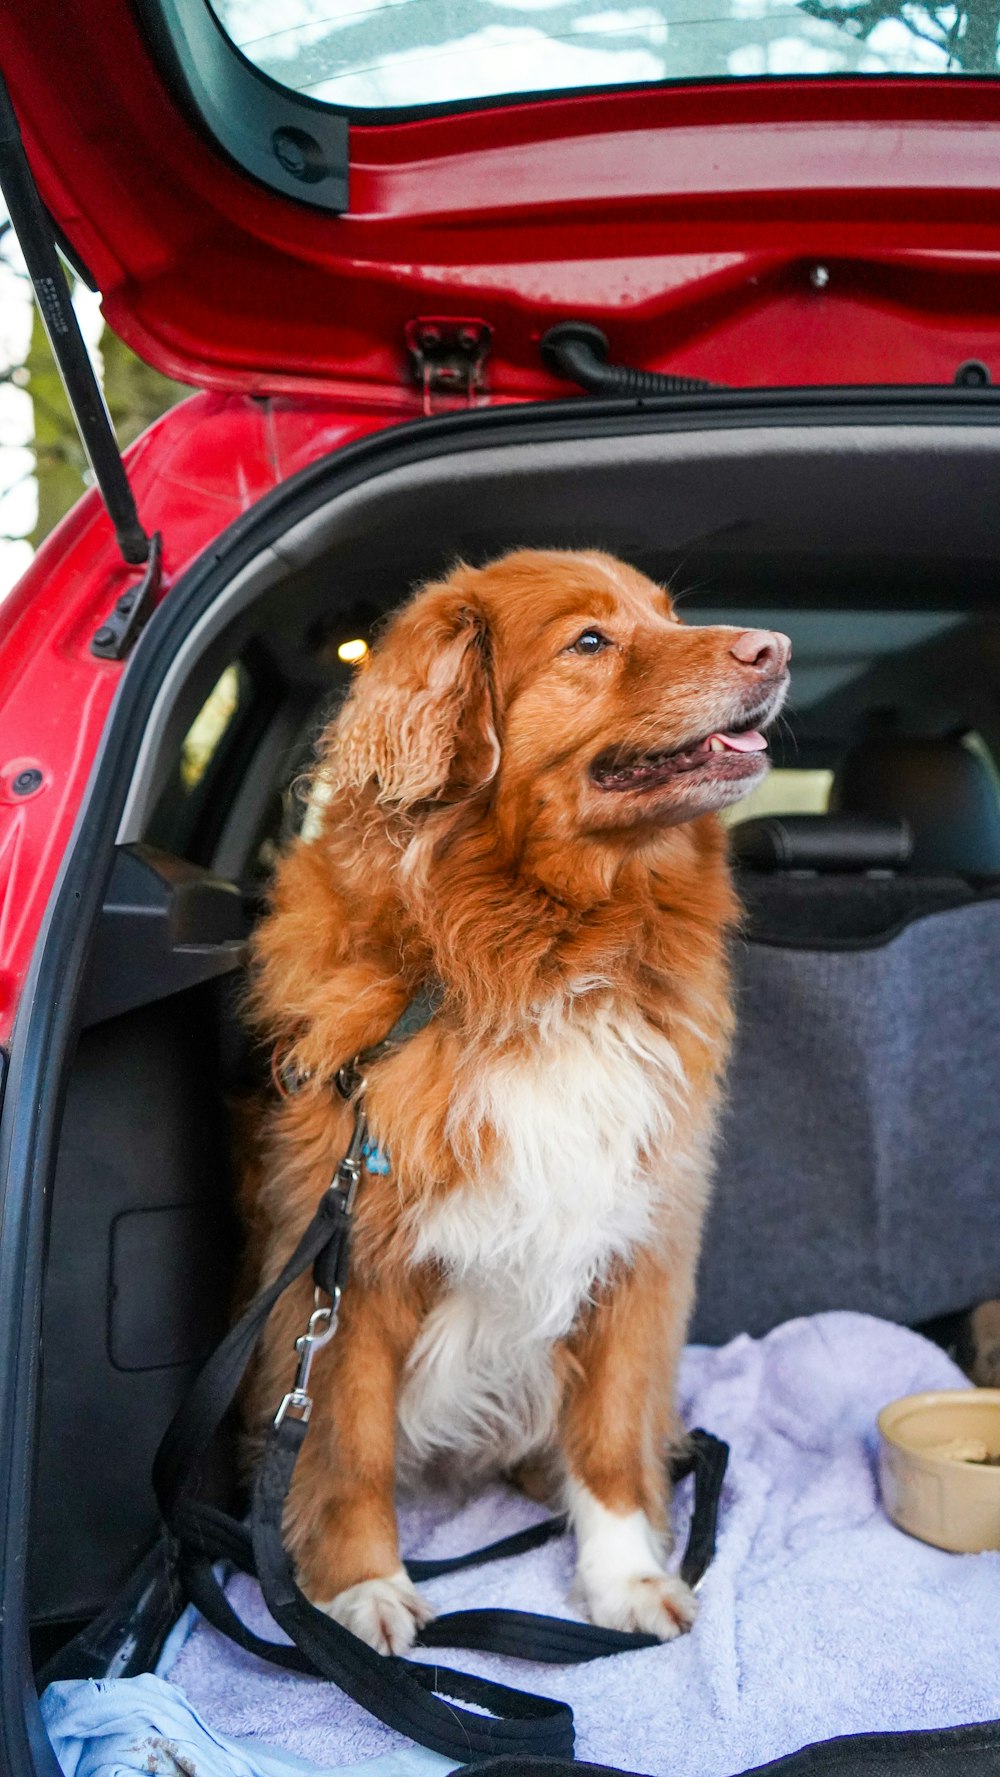 Perro adulto de pelo largo marrón y blanco sentado en la parte trasera del vehículo